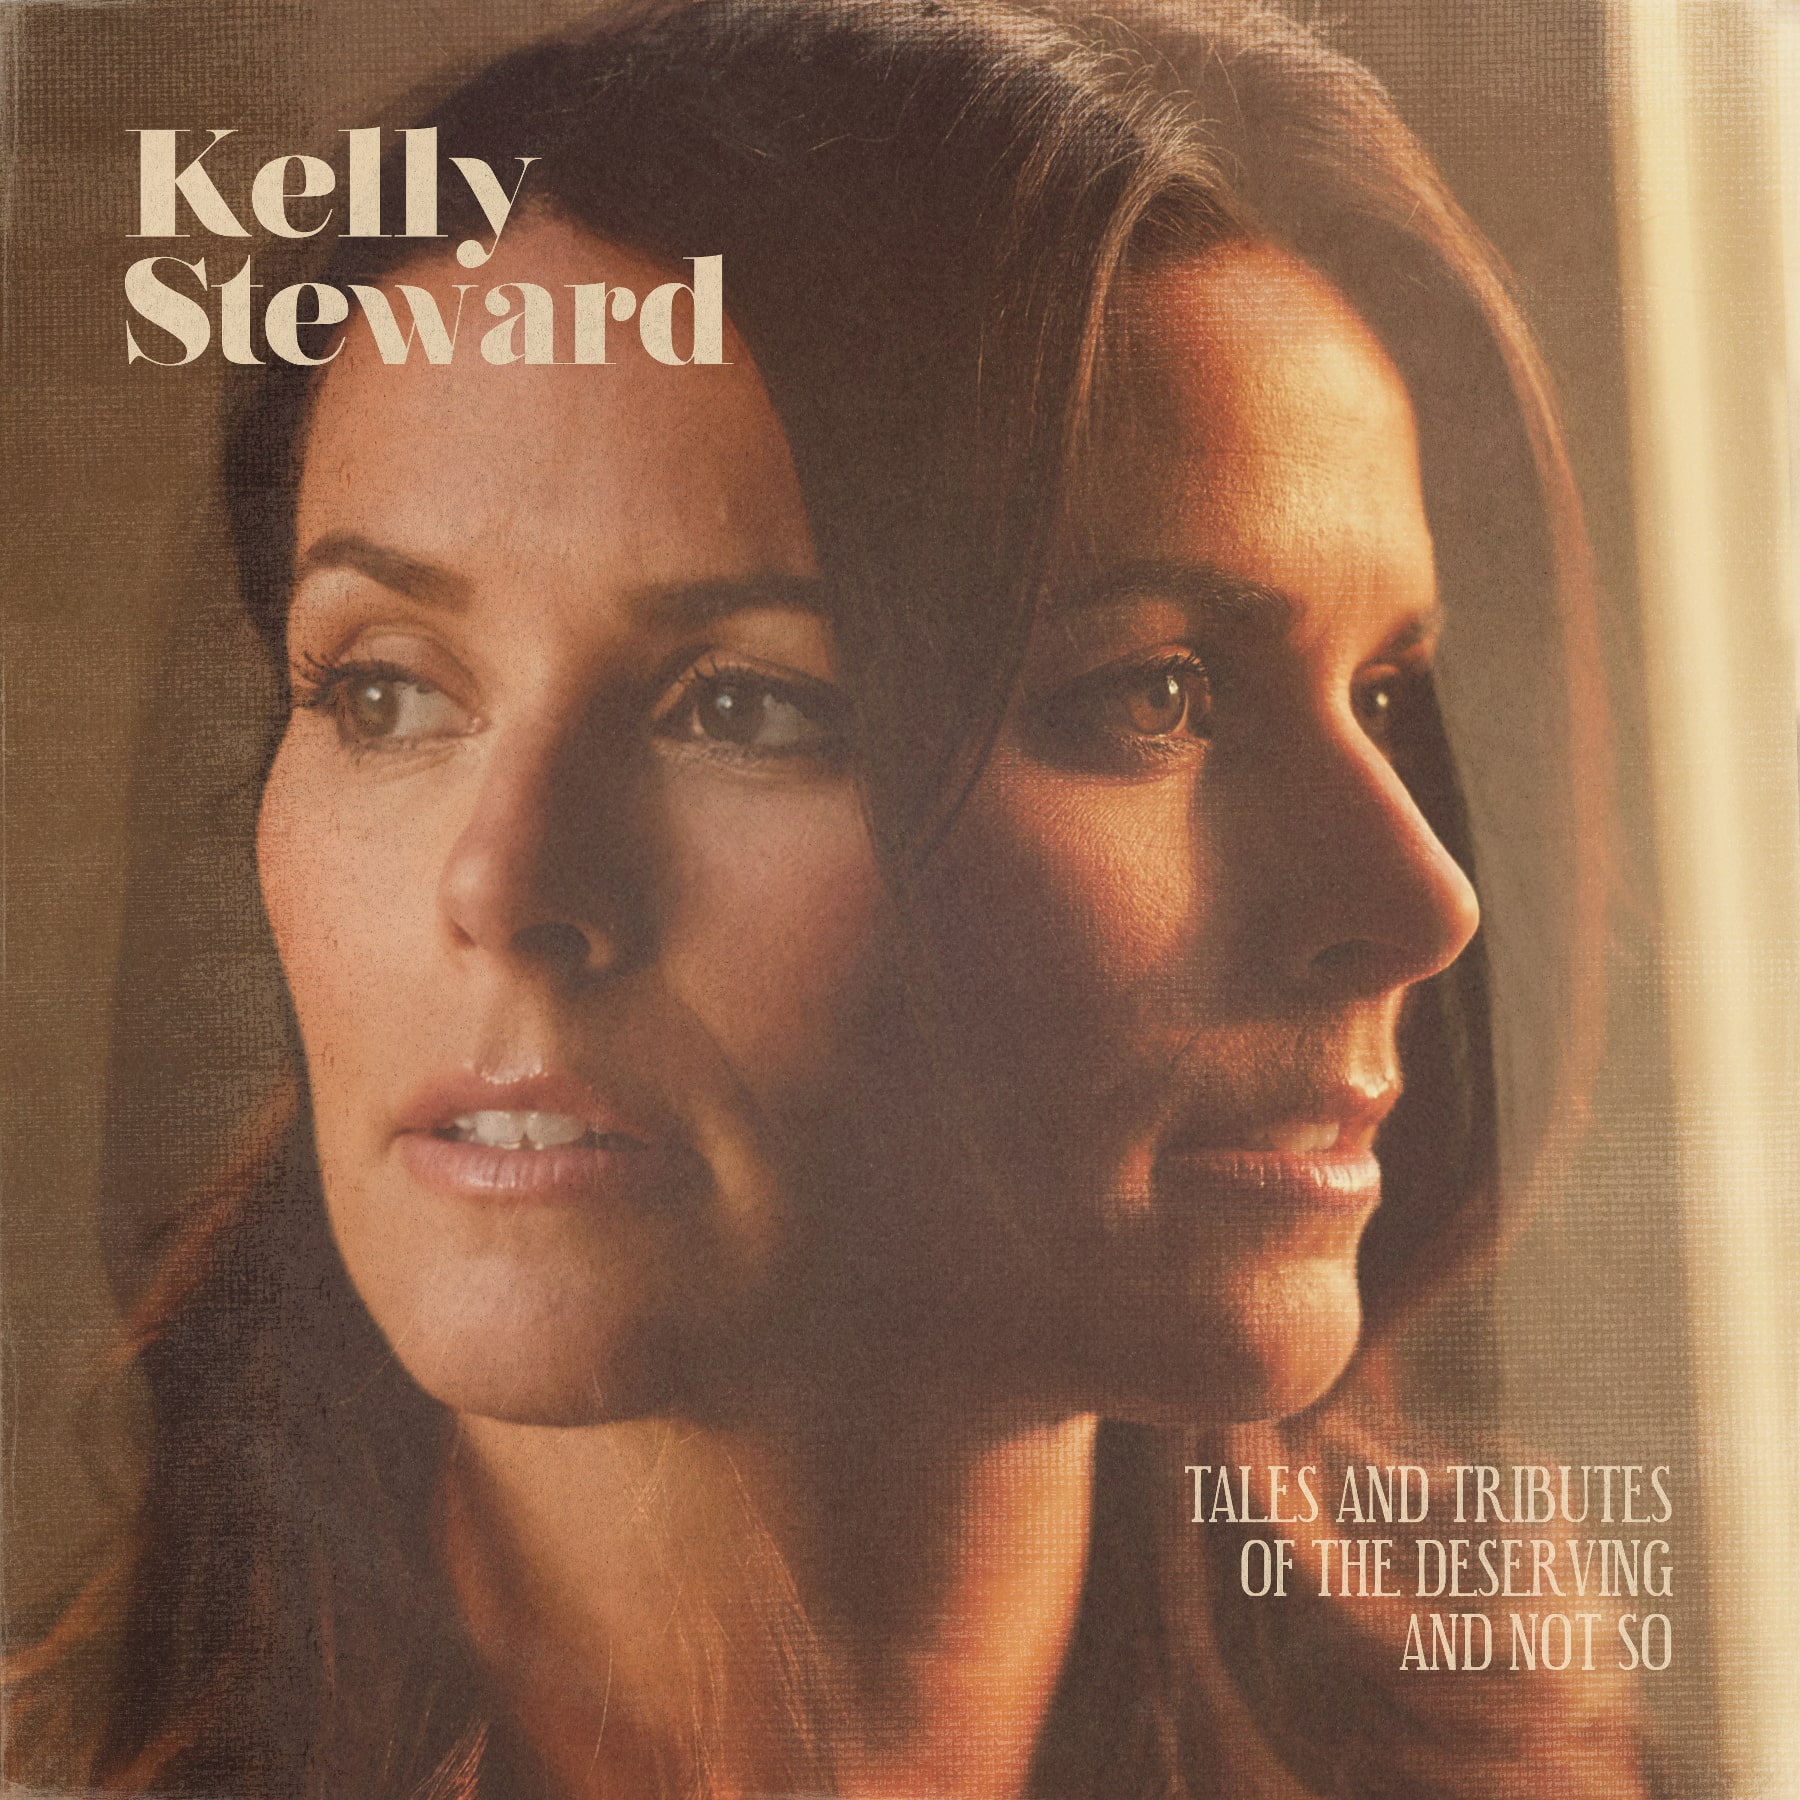 Kelly Steward album cover